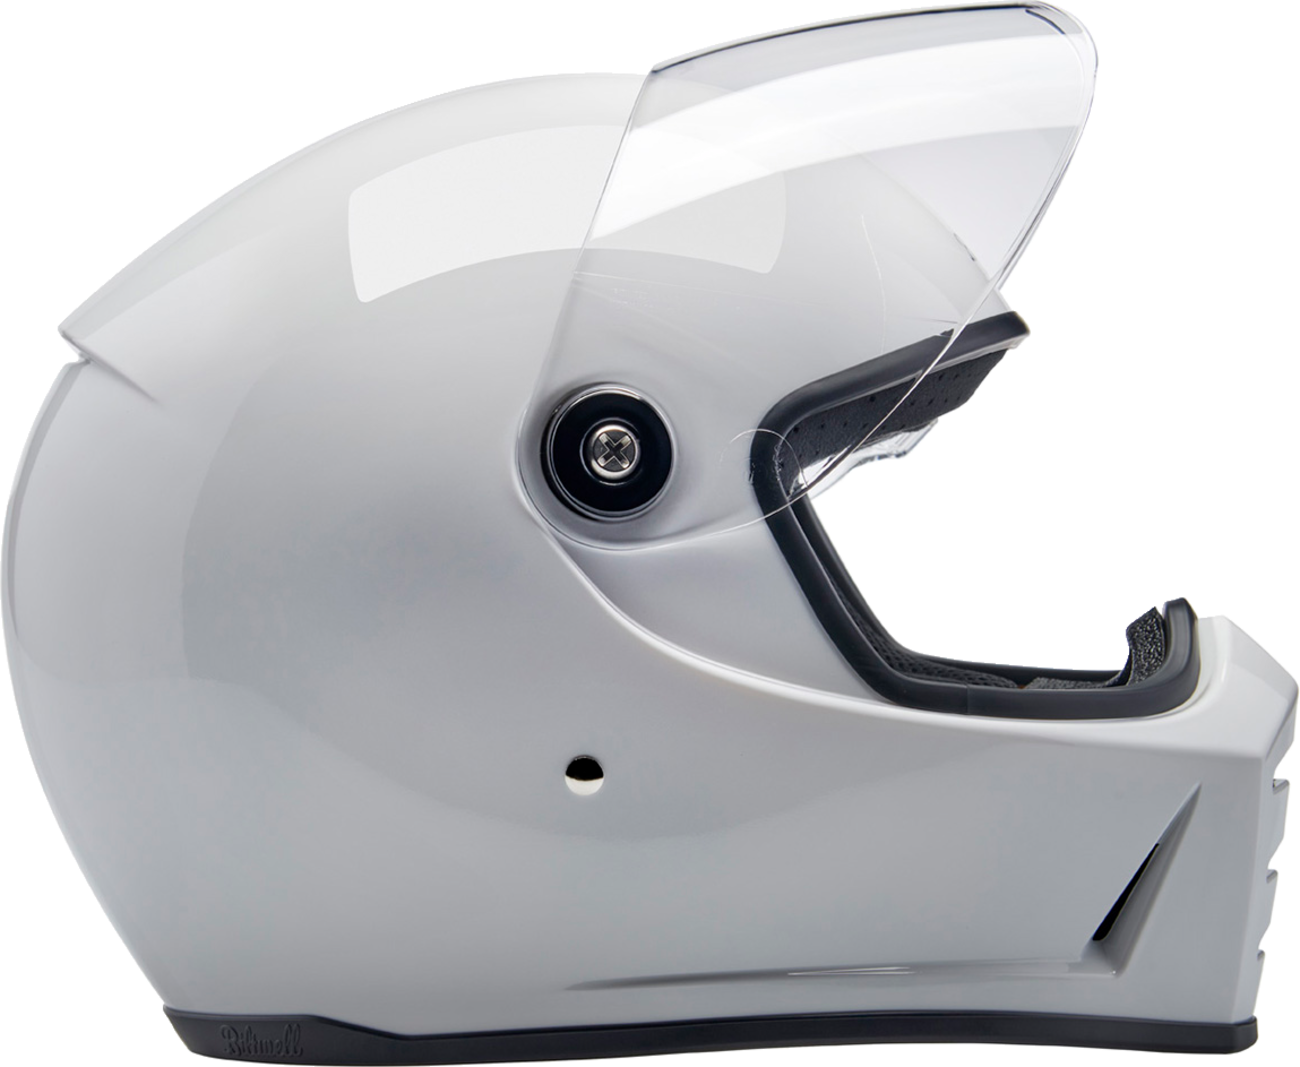 BILTWELL Lane Splitter Helmet - Gloss White - 2XL 1004-104-506